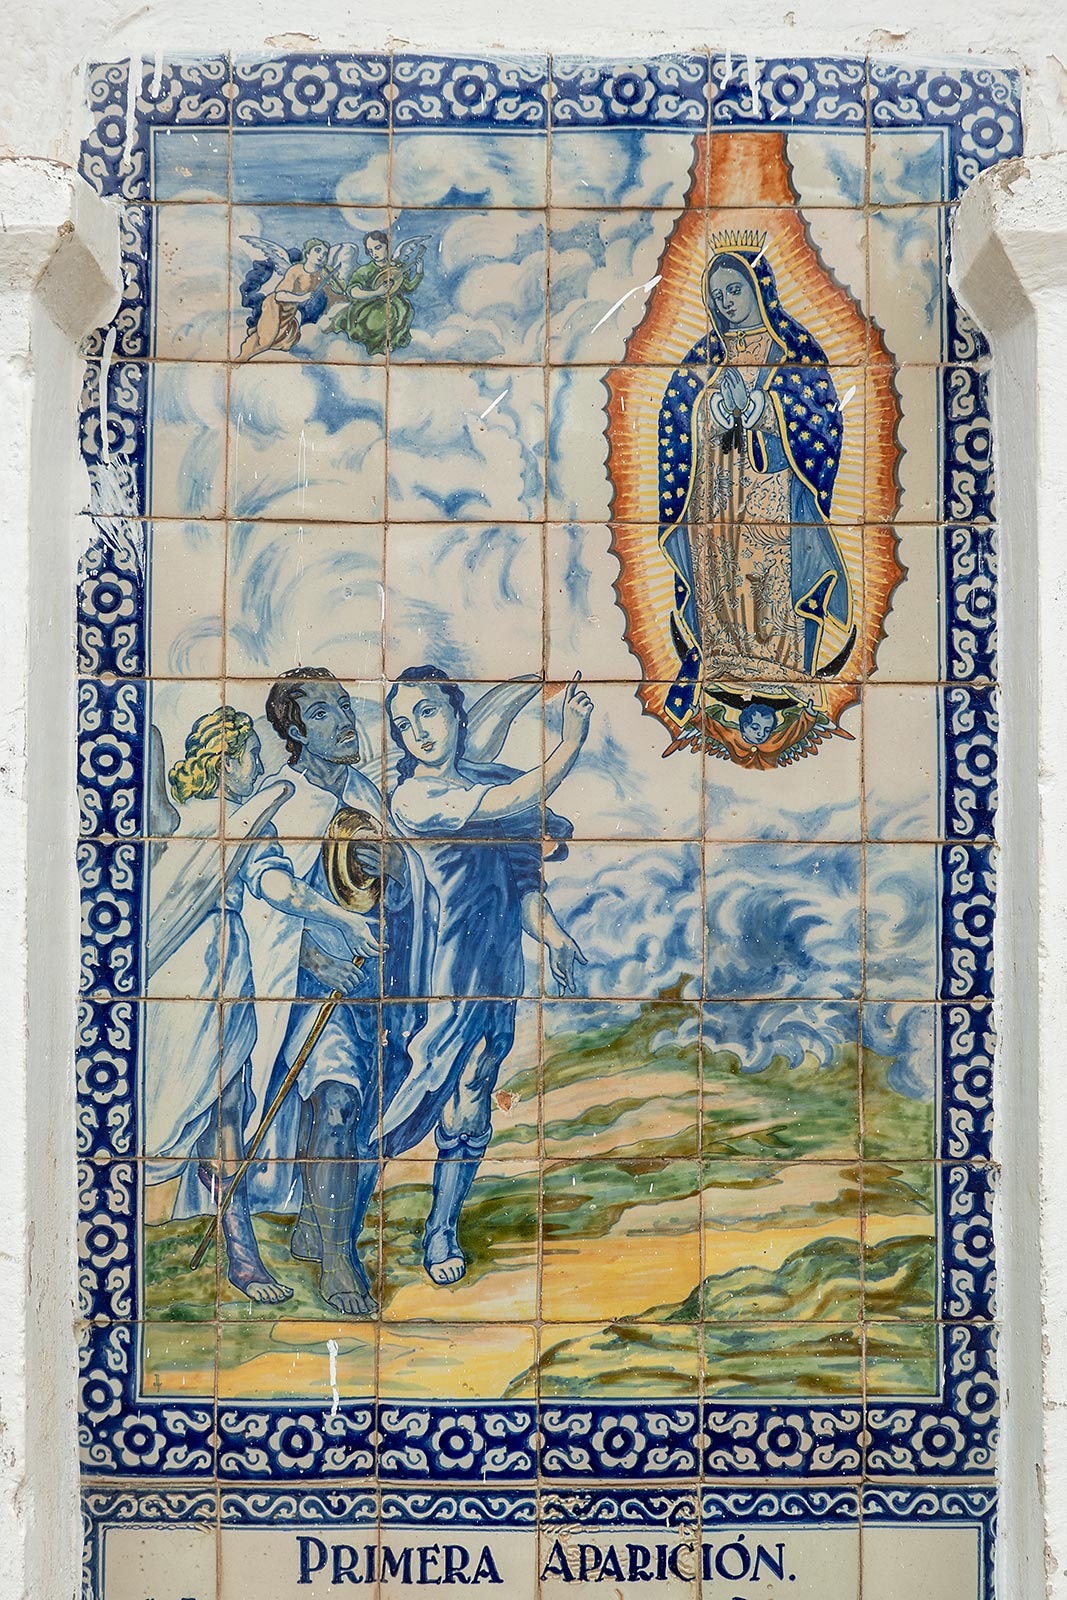 Immagine dipinta su piastrelle della prima apparizione della Vergine Maria a Juan Diego, Santuario del Señor del Sacromonte Amecameca